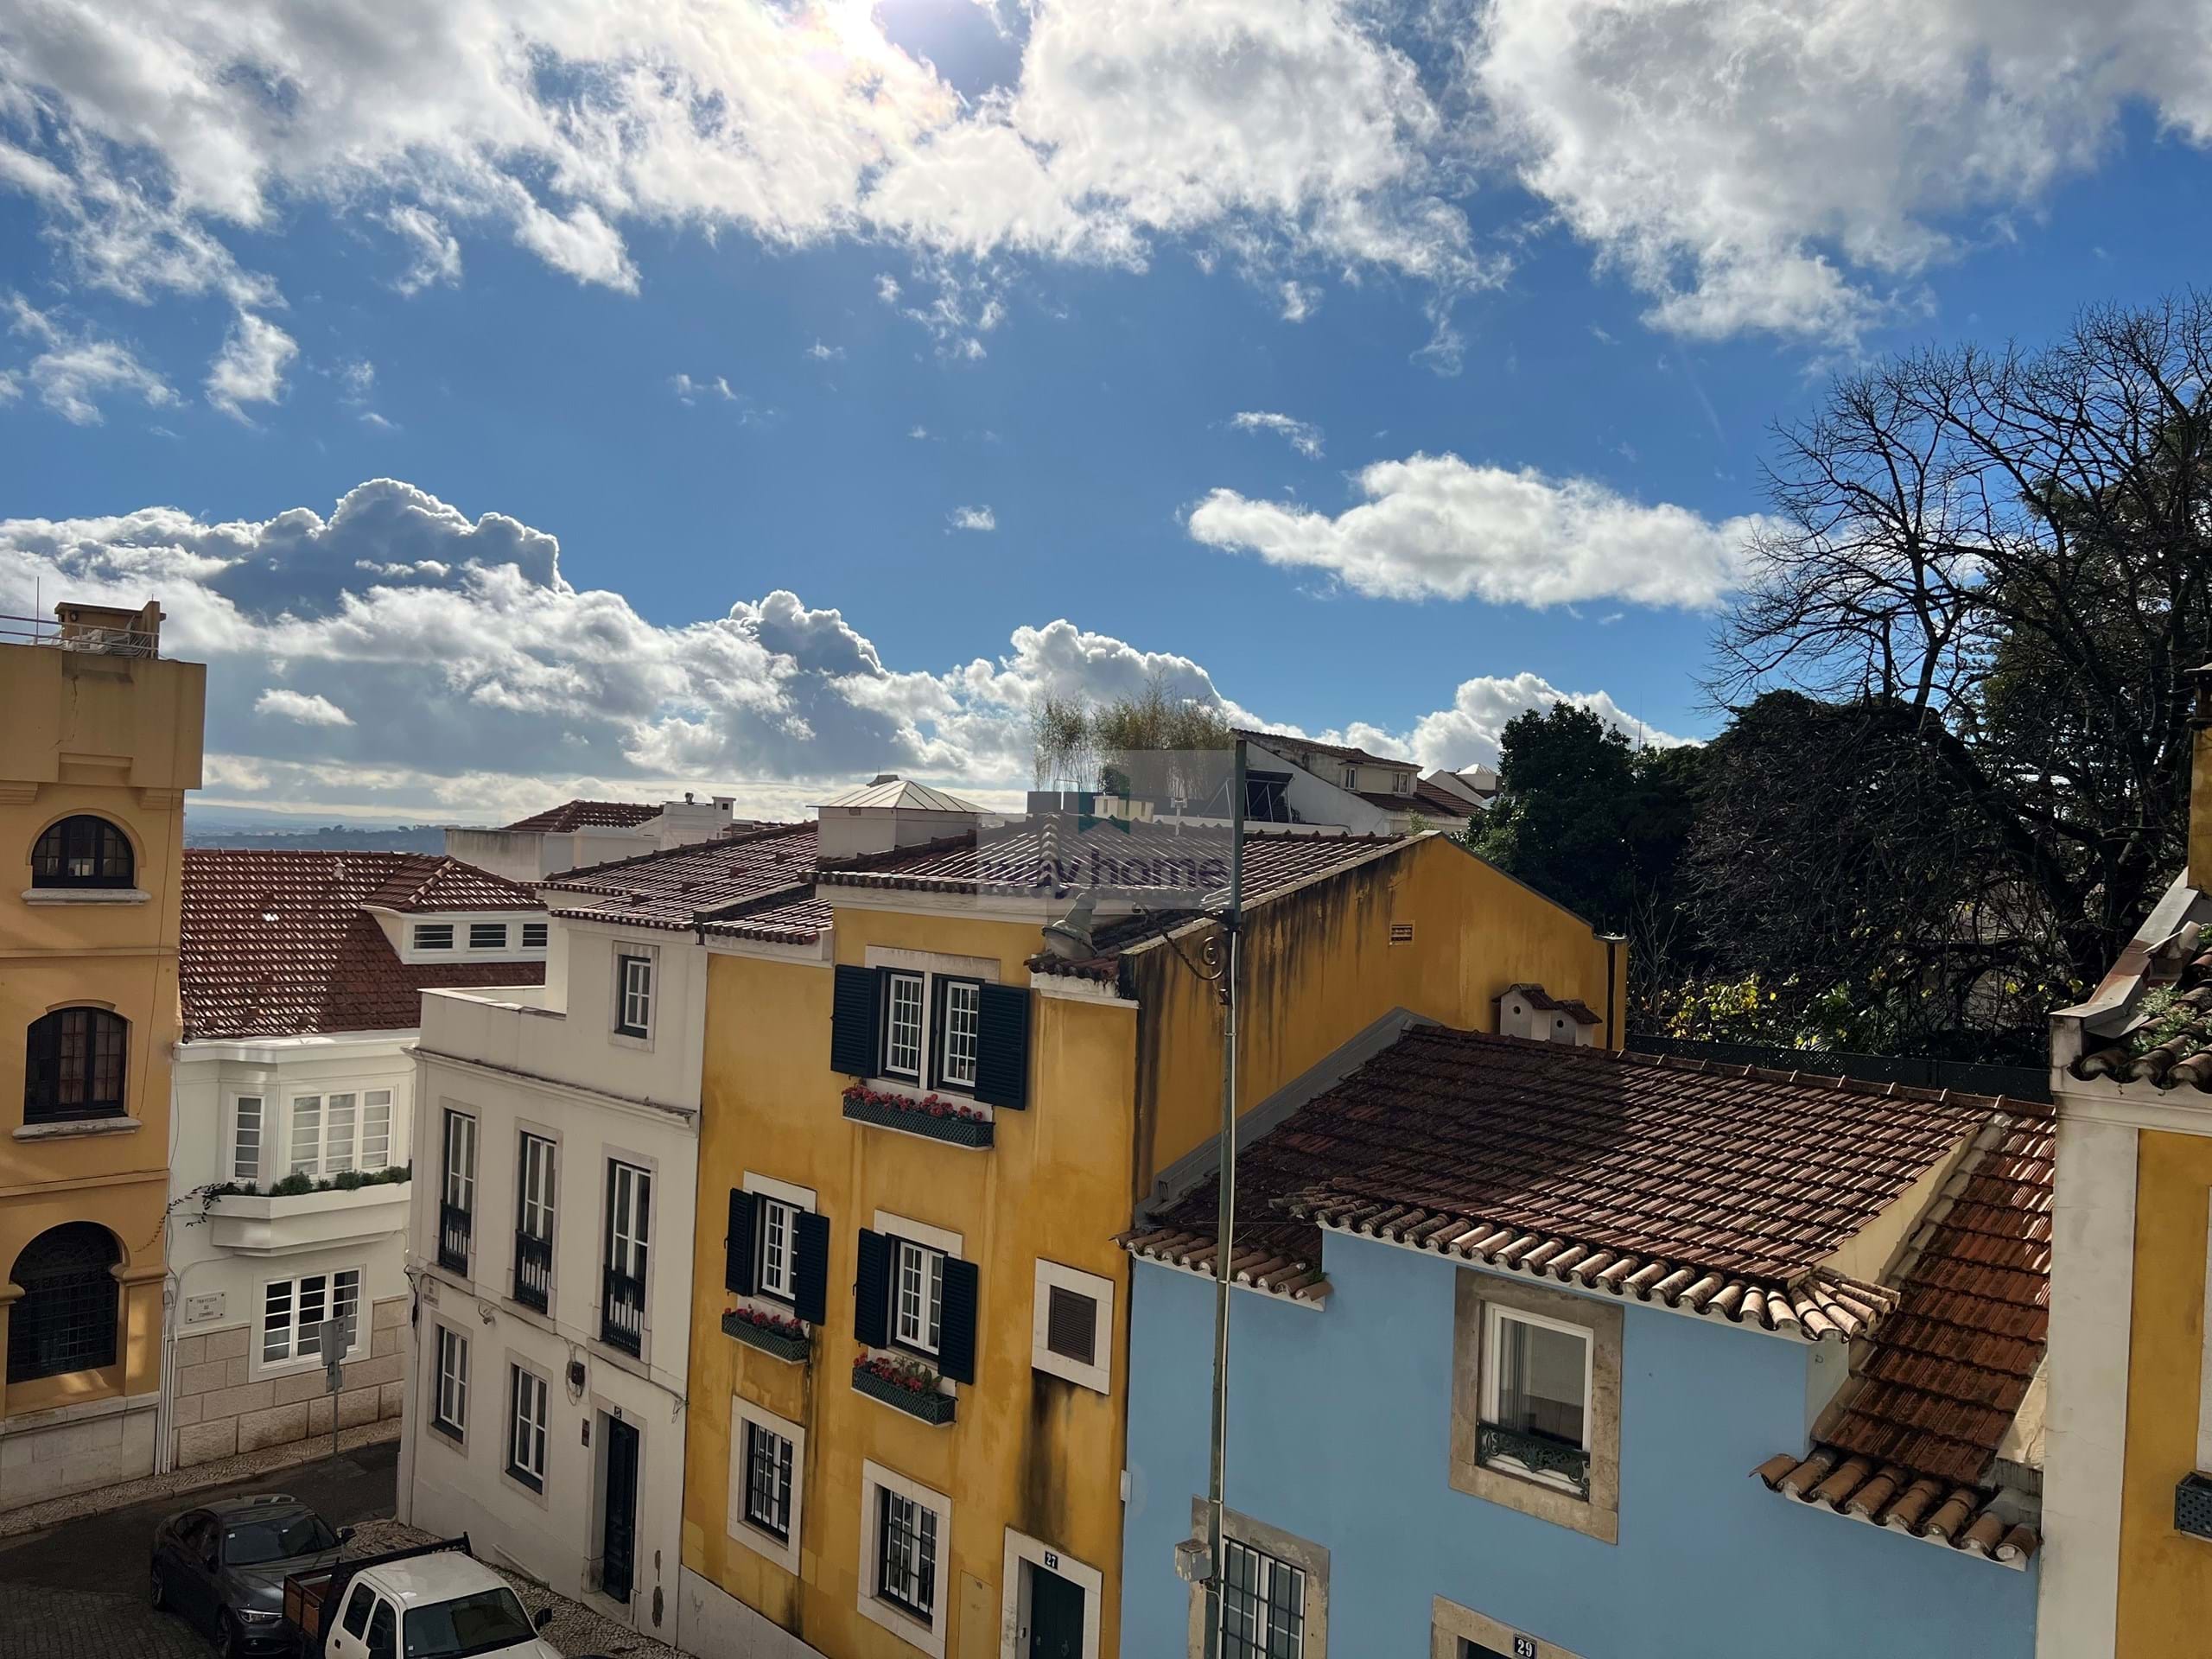 Arrendamento - Lisboa - Estrela - Apartamento para arrendar T2+1 | Equipado e mobilado| Elevador e parqueamento | Lapa